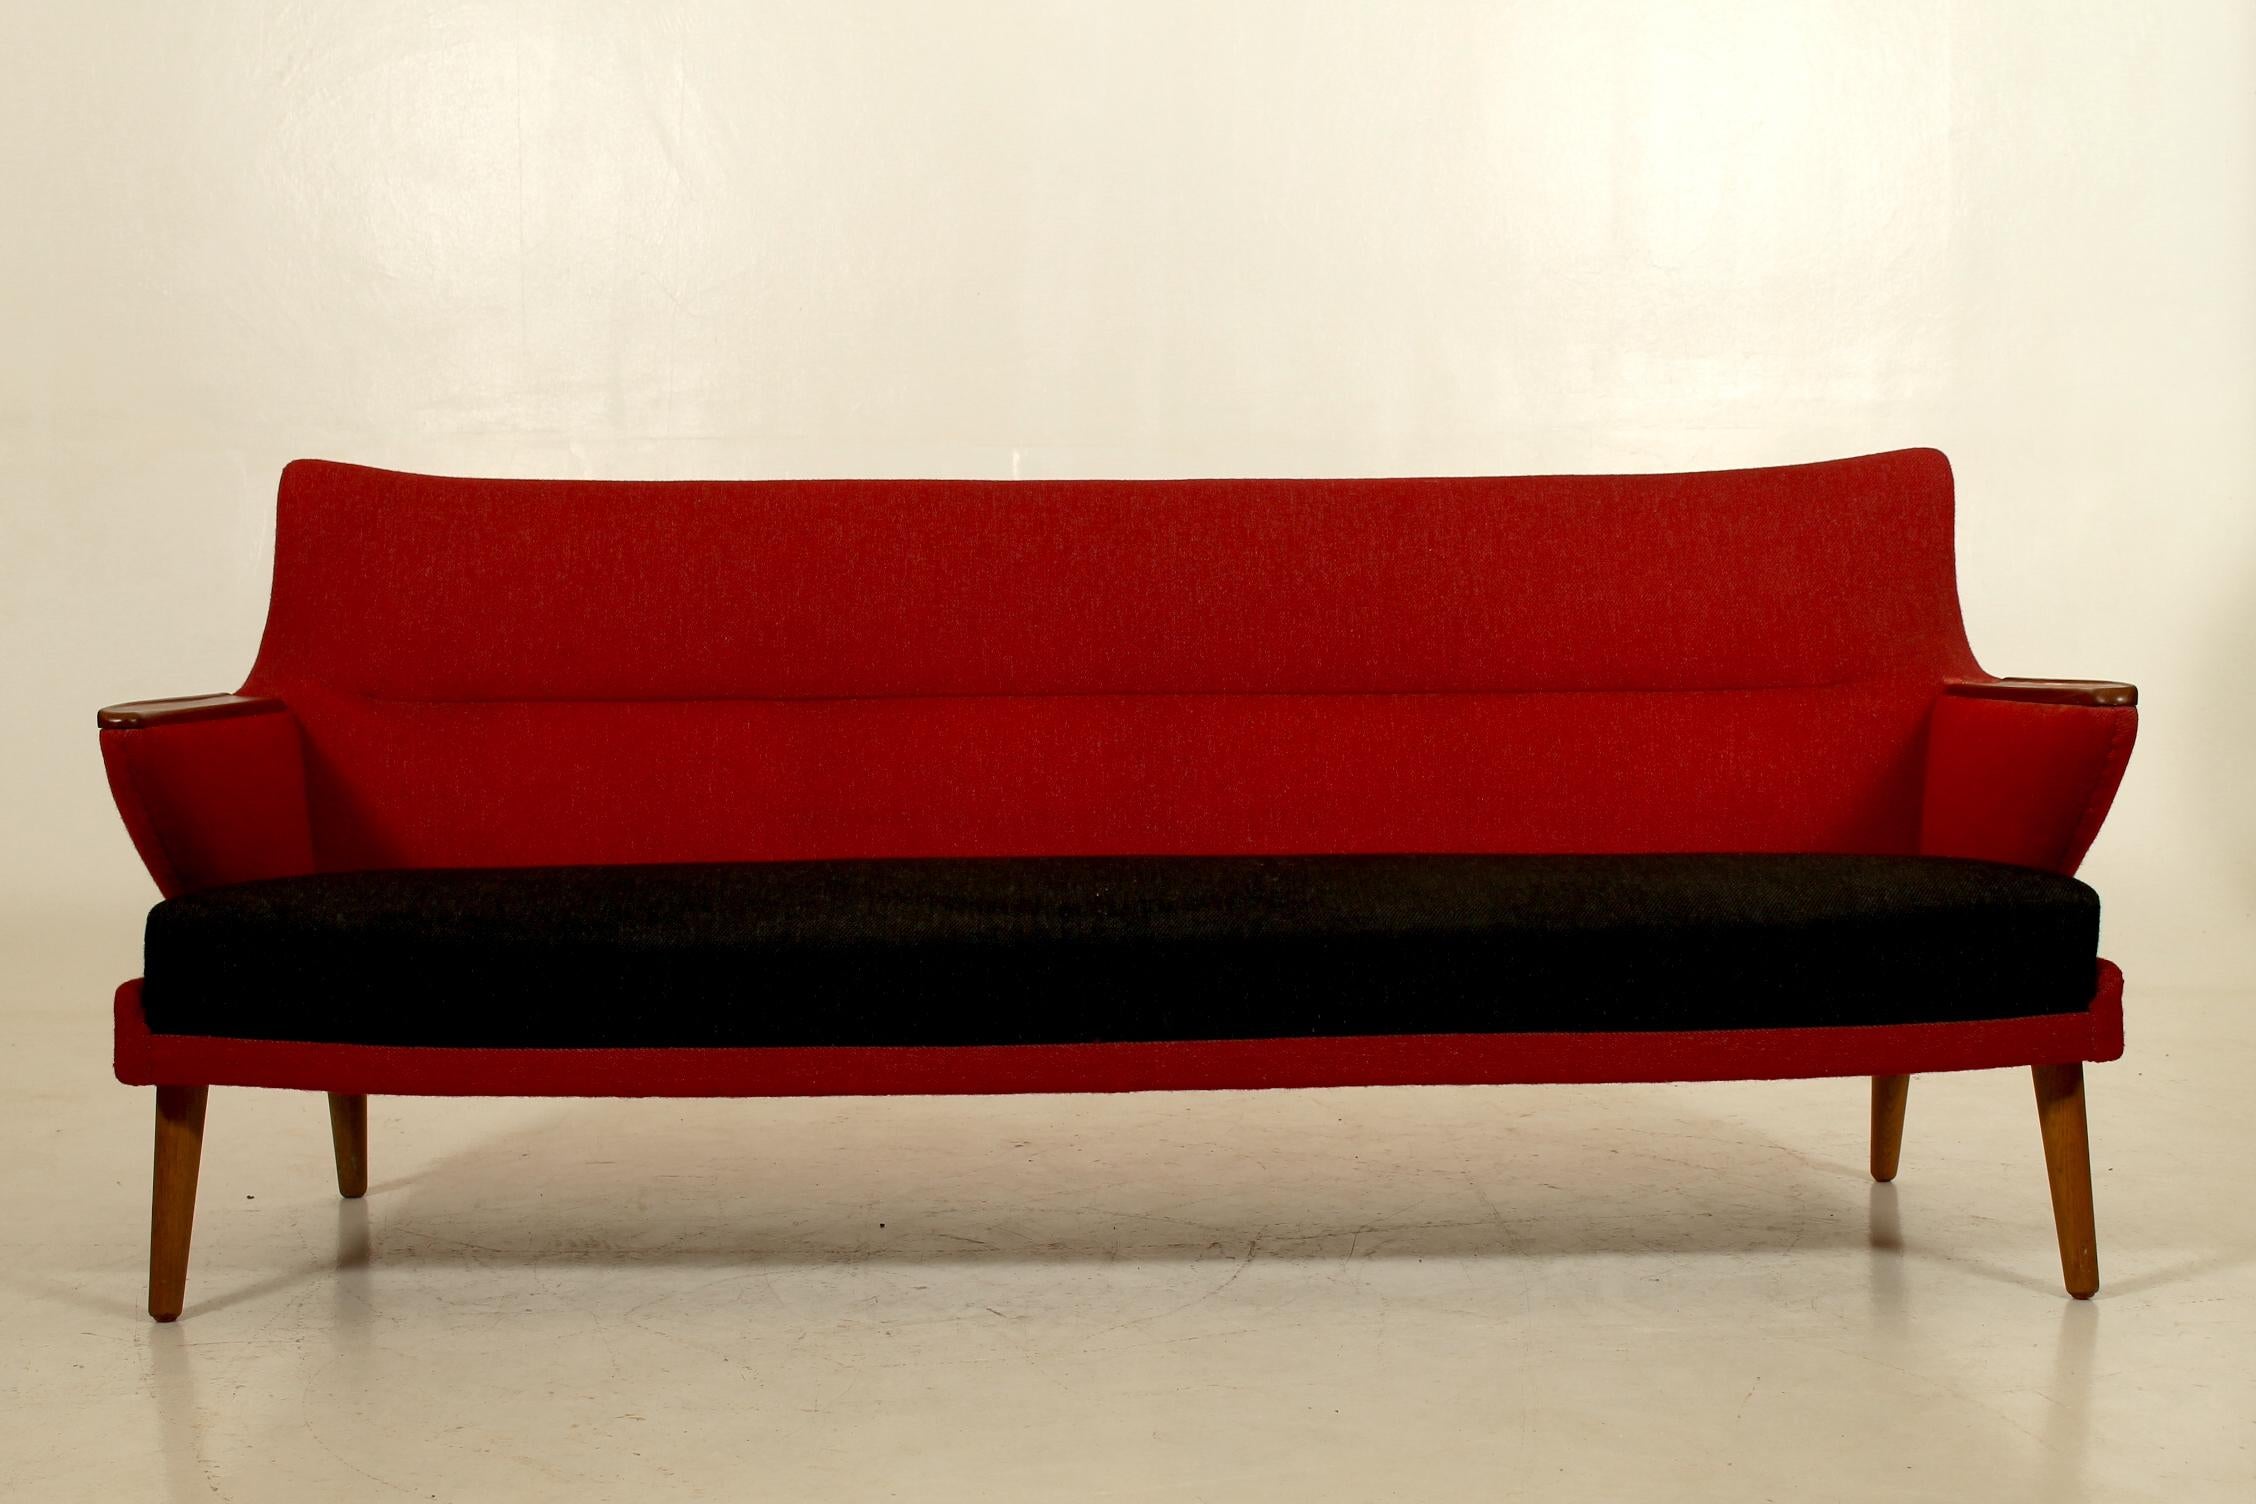 Dieses schöne Sofa ist ein Vorläufer des schönen und minimalistischen Designansatzes der 50er Jahre. Die klaren Linien und die Leichtigkeit des Sofas werden mit unglaublicher Qualität und professioneller Handwerkskunst kombiniert.
Entworfen von Kurt